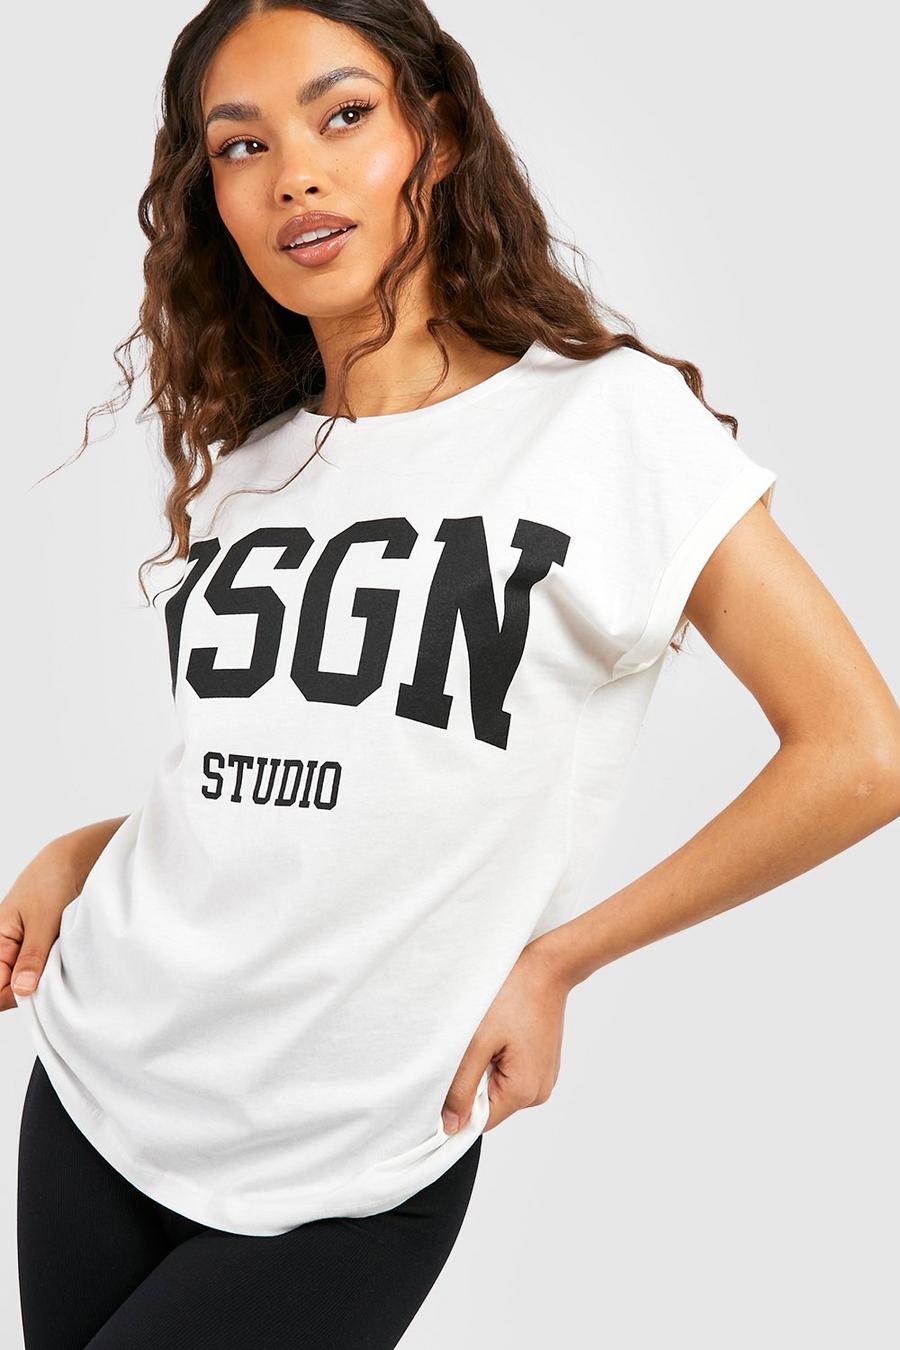 T-shirt à manches retroussées et slogan Dsgn Studio, White